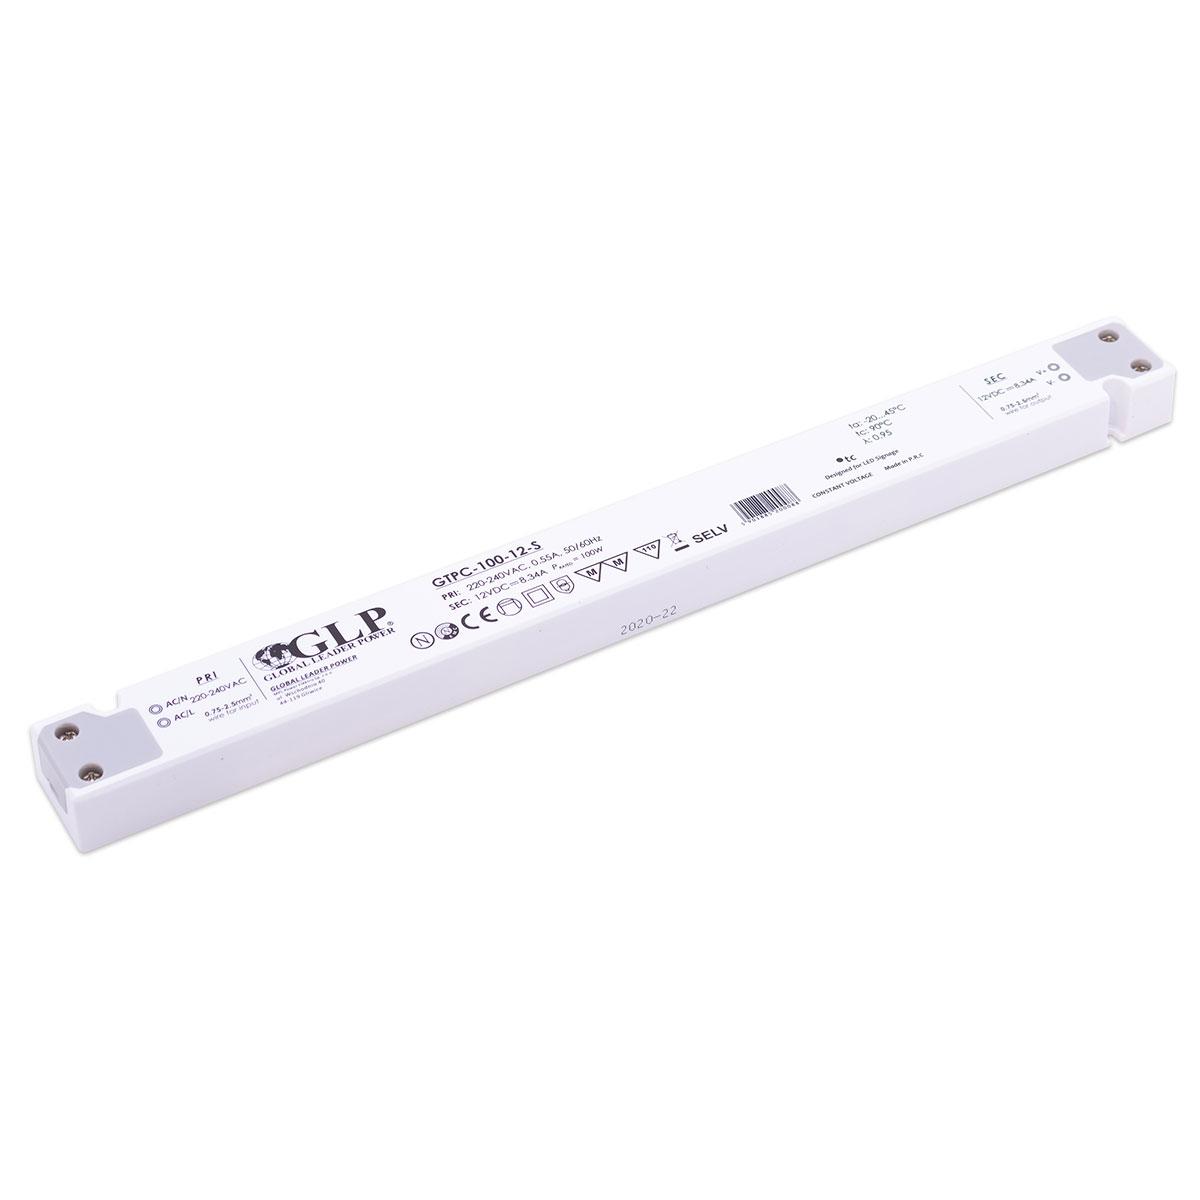 GLP GTPC-100-12-S LED Netzteil extrem flach für Möbeleinbau 100W 12V 8.34A IP20 Schaltnetzteil CV